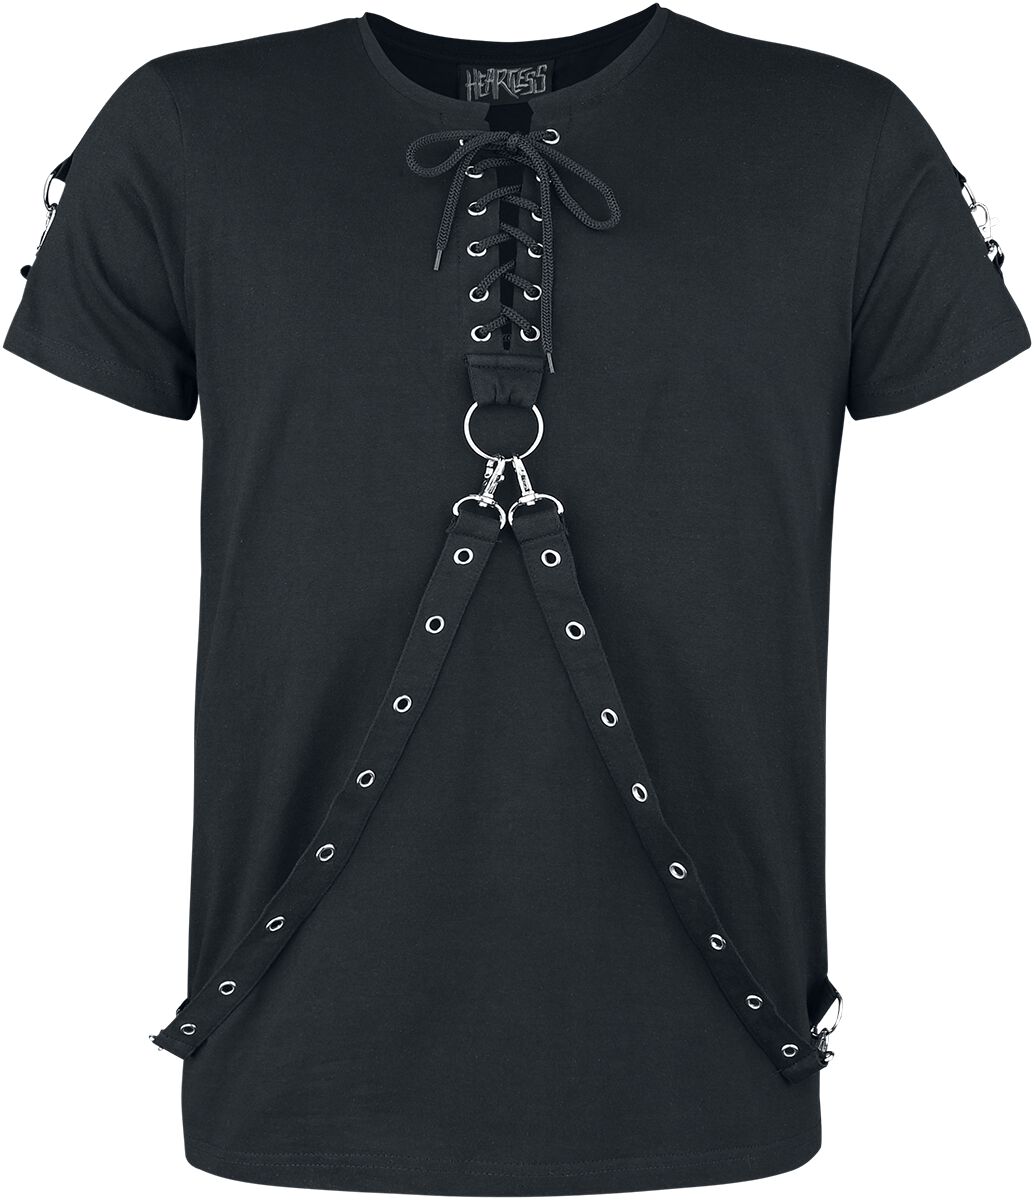 Heartless - Gothic T-Shirt - Einer Top - S bis 4XL - für Männer - Größe XL - schwarz